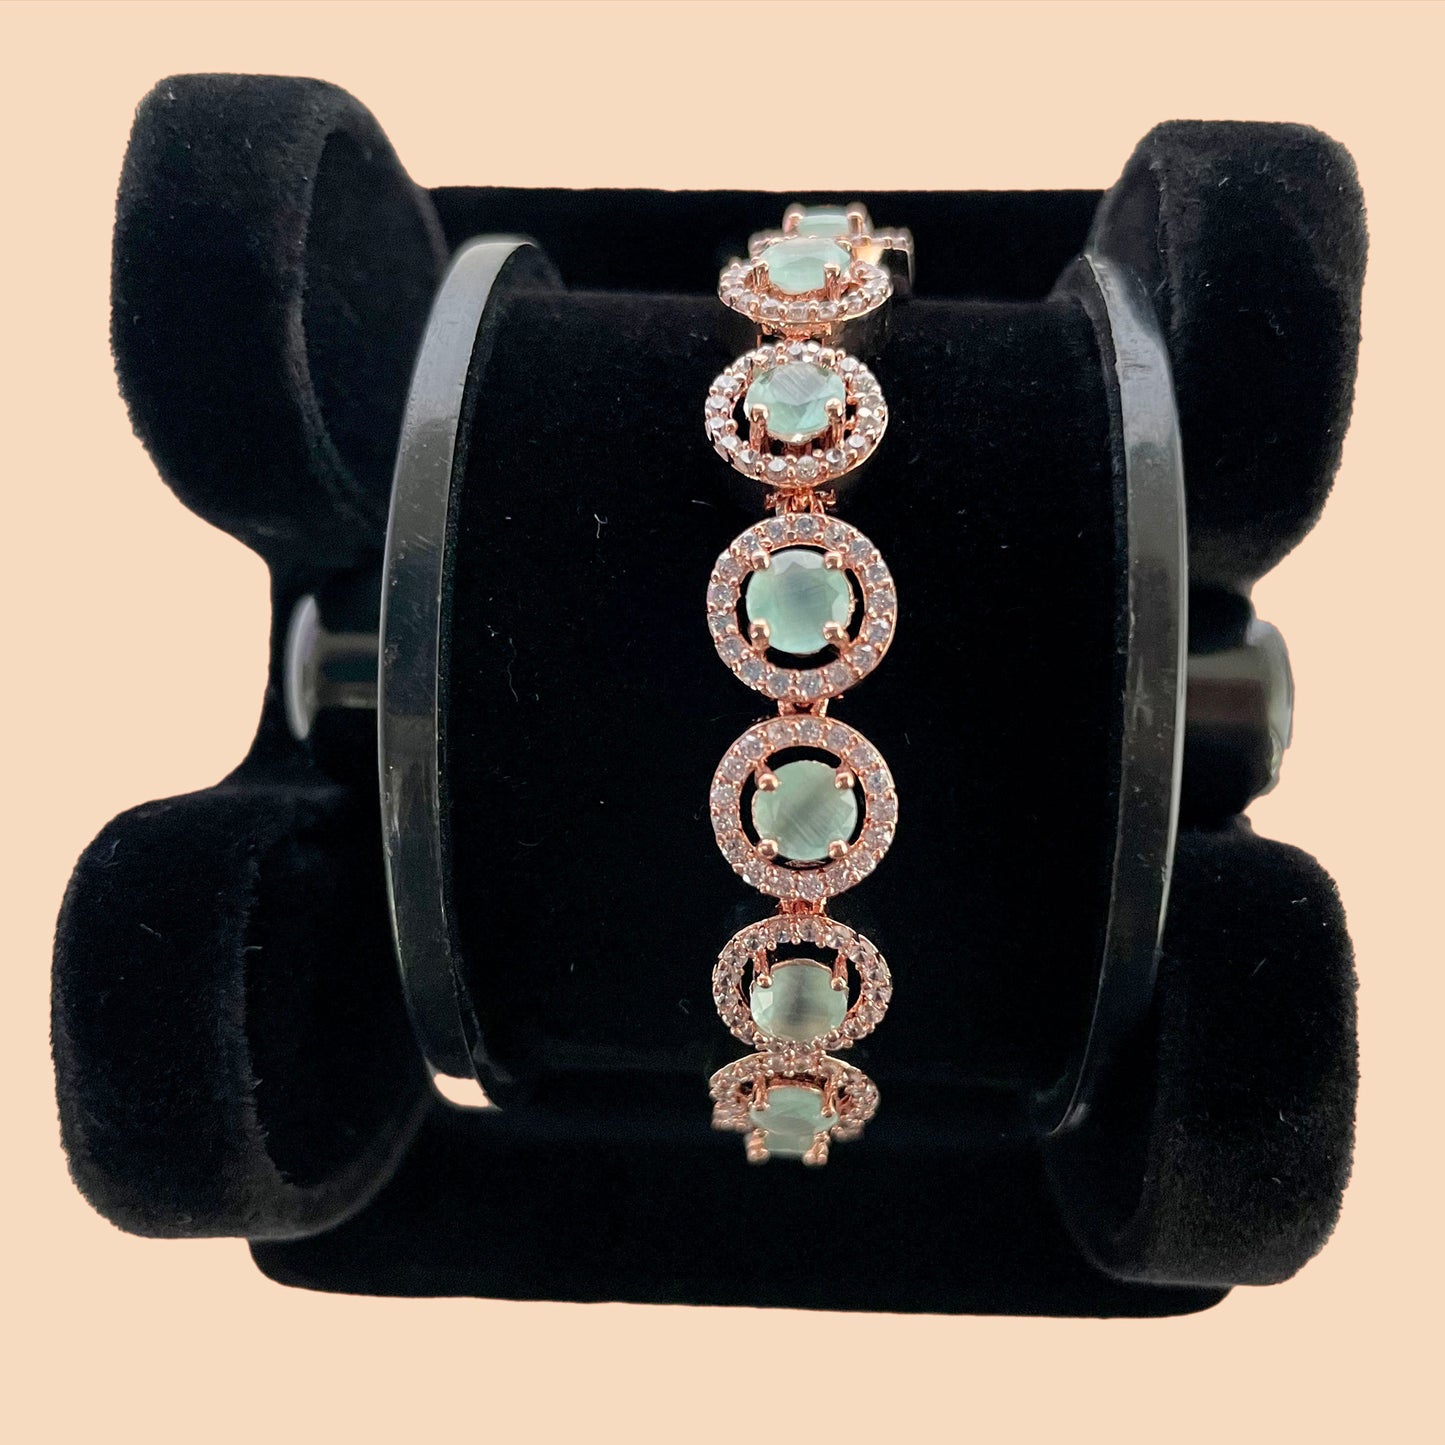 Bracelet with Green Round Stones